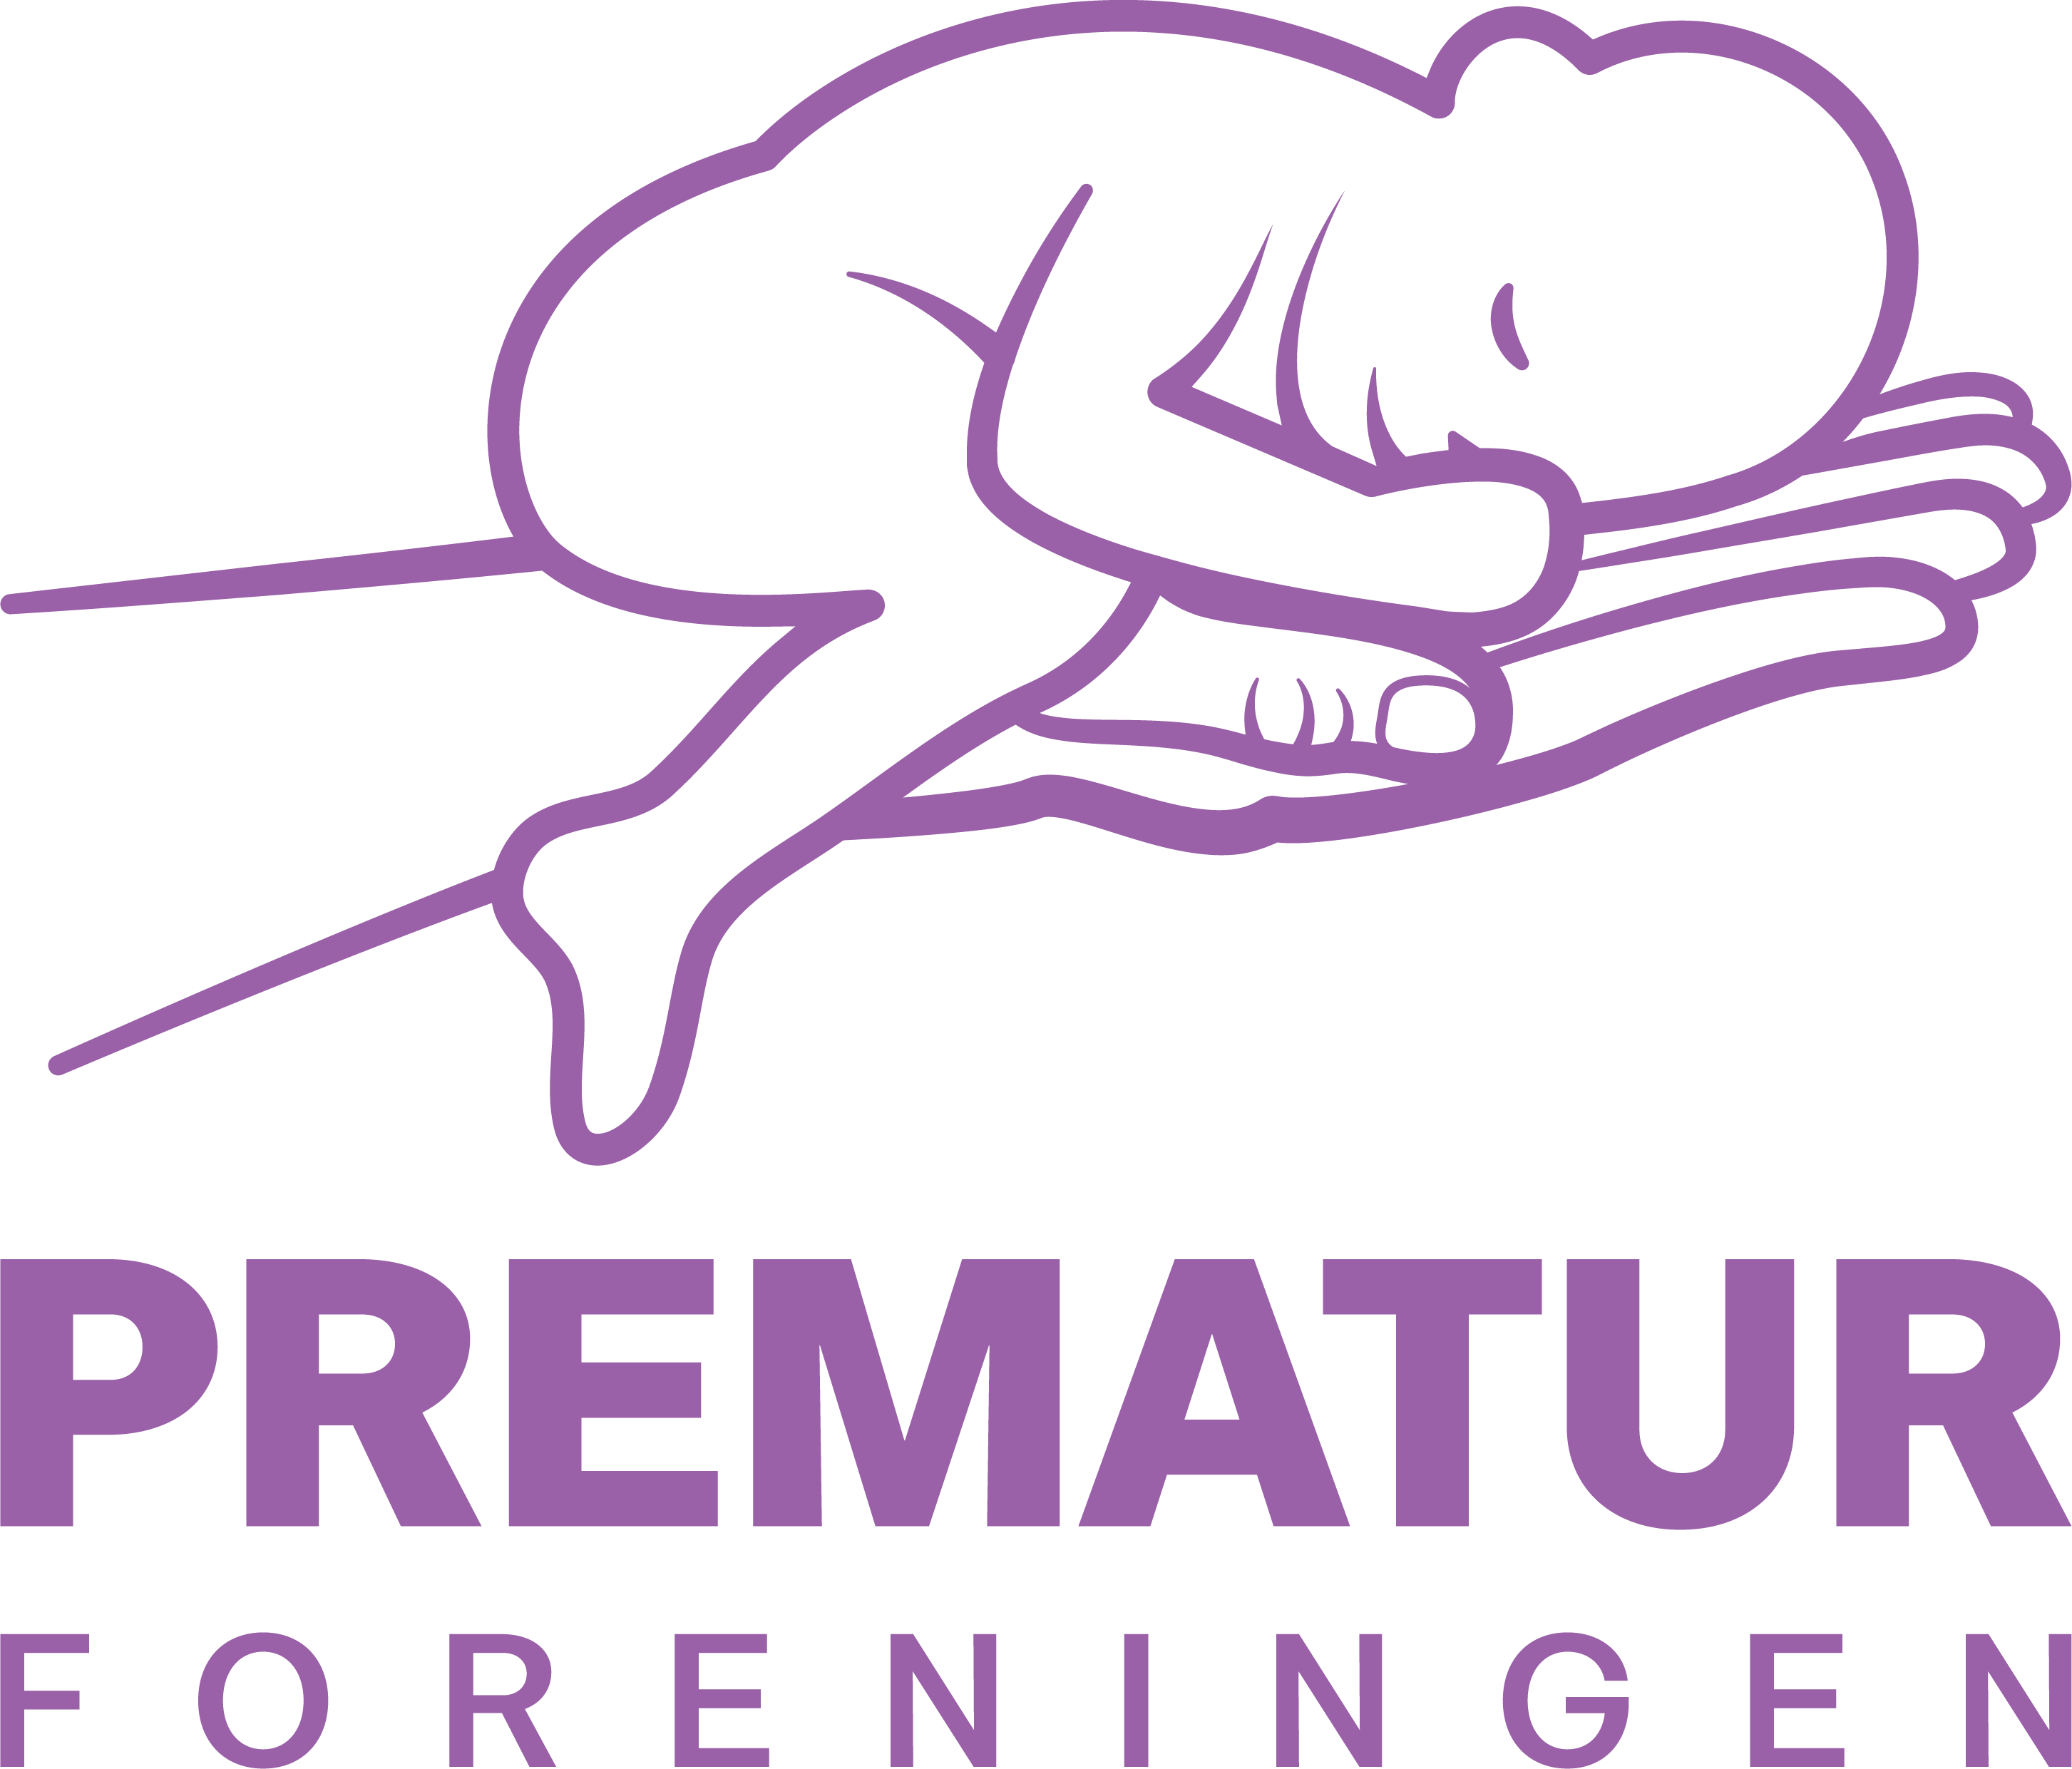 Prematurforeningen-Norge.png